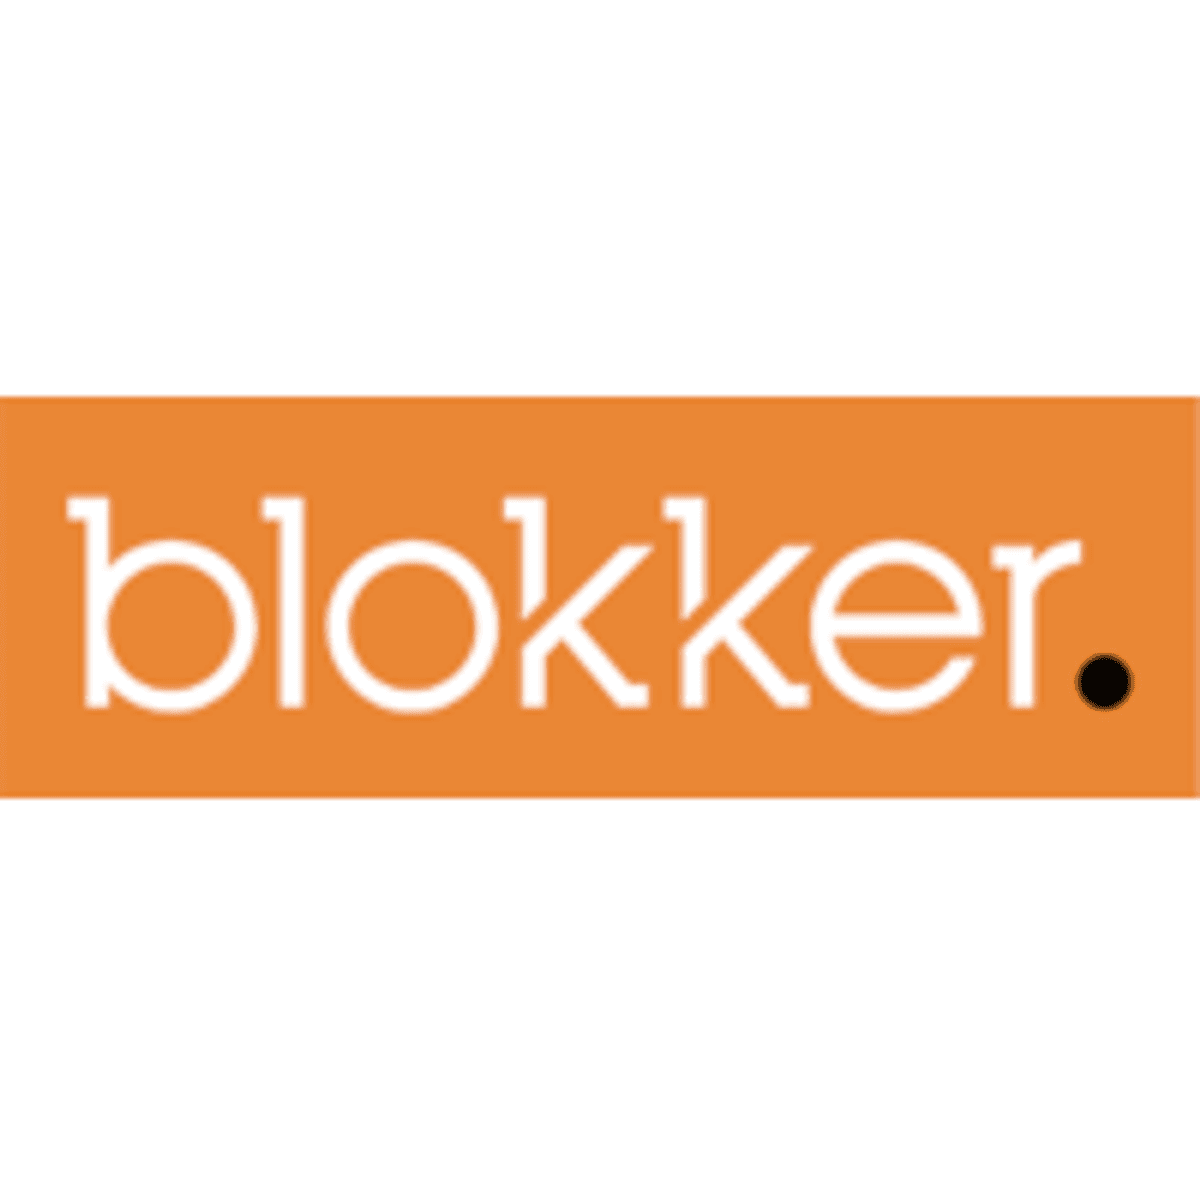 Gegevens Blokker-klanten inzichtelijk door datalek image